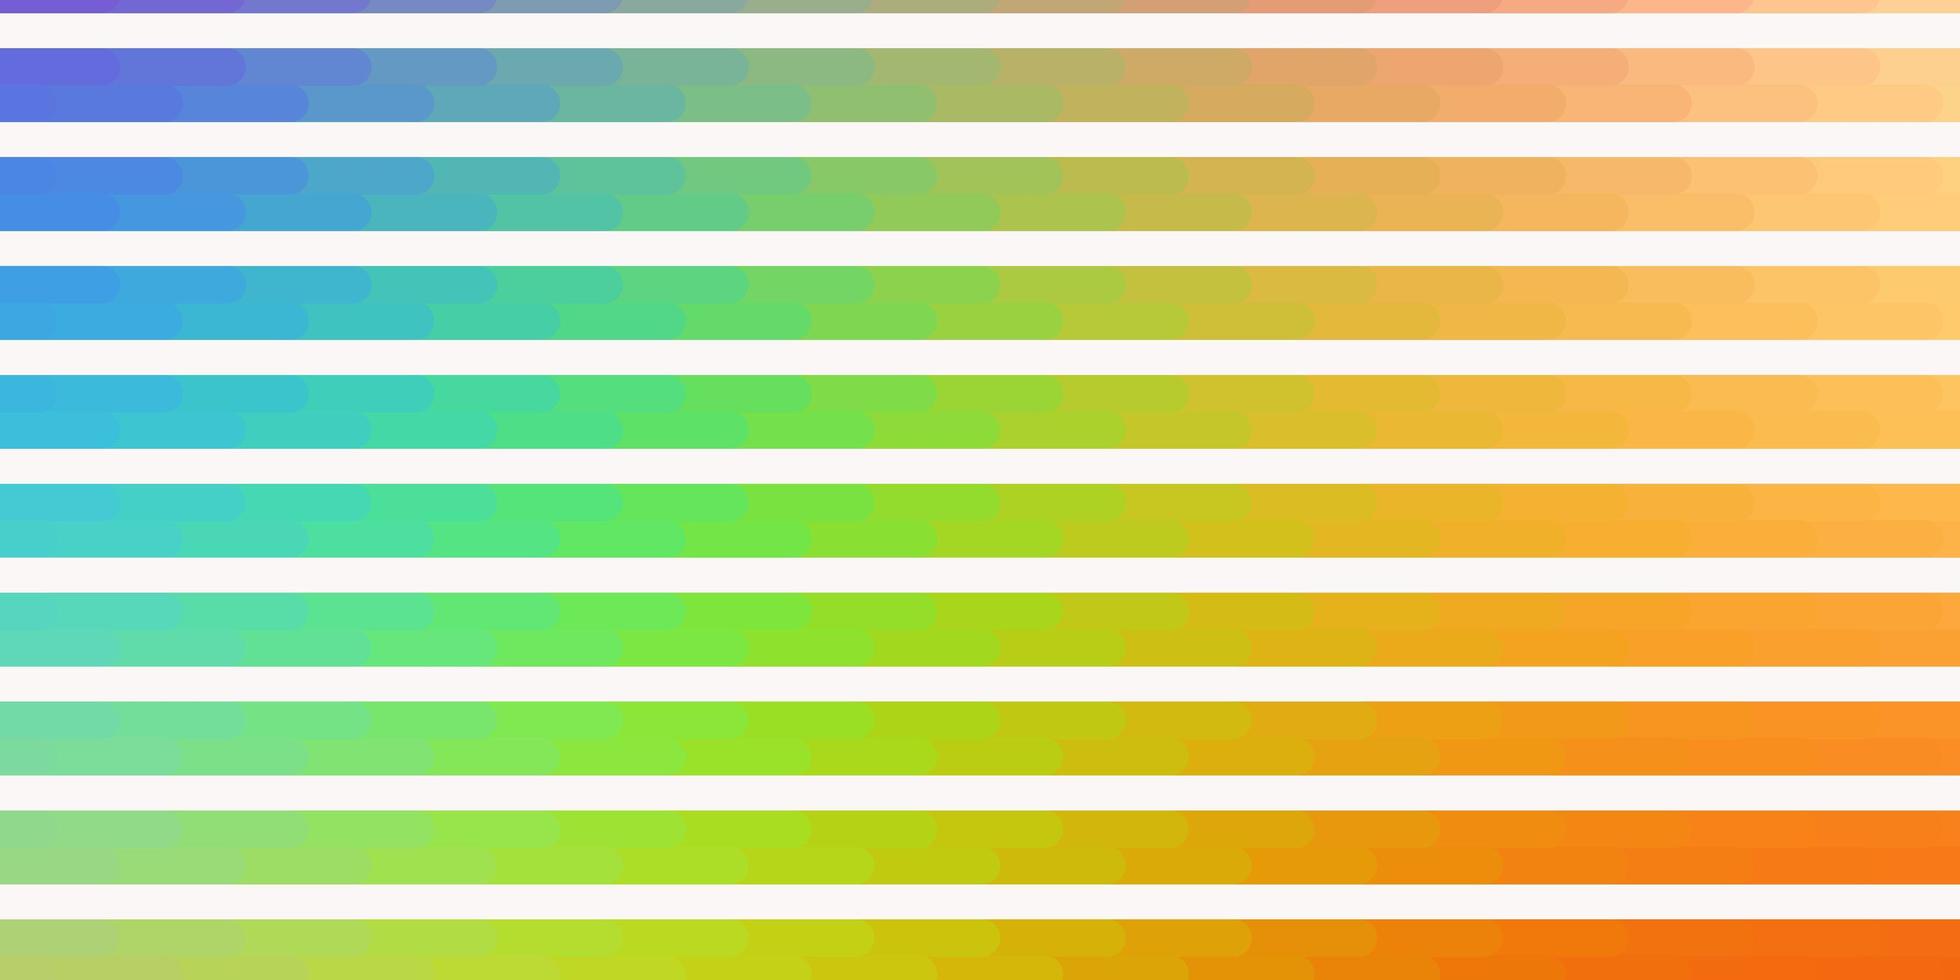 ljus flerfärgad vektorlayout med linjer. vektor